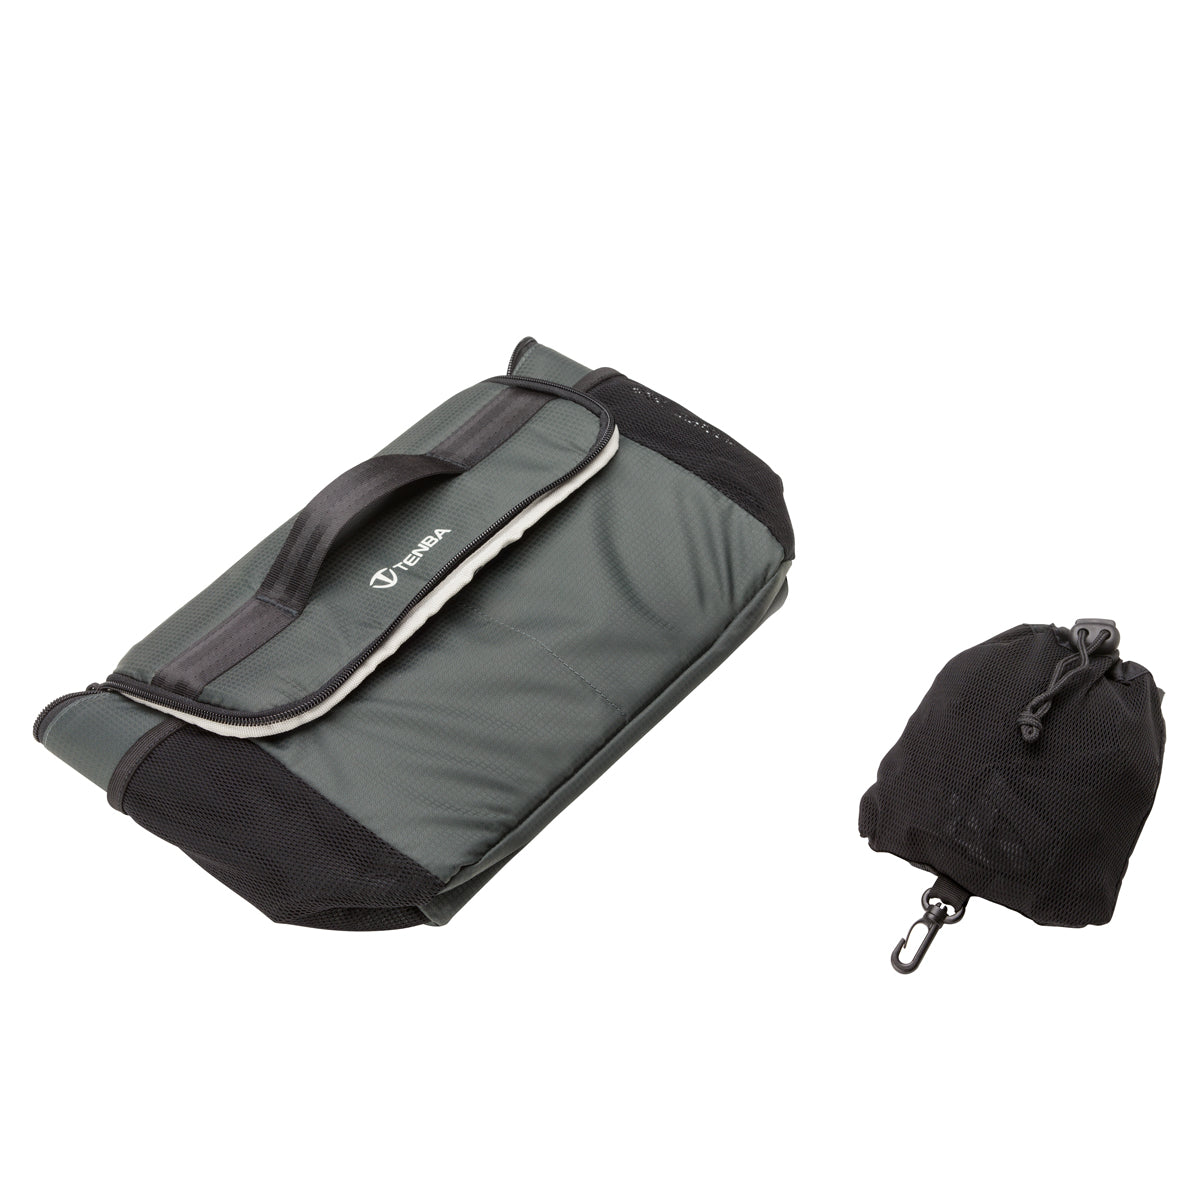 Tenba BYOB/Packlite 10 Flatpack Bundle Bag (Black & Gray)